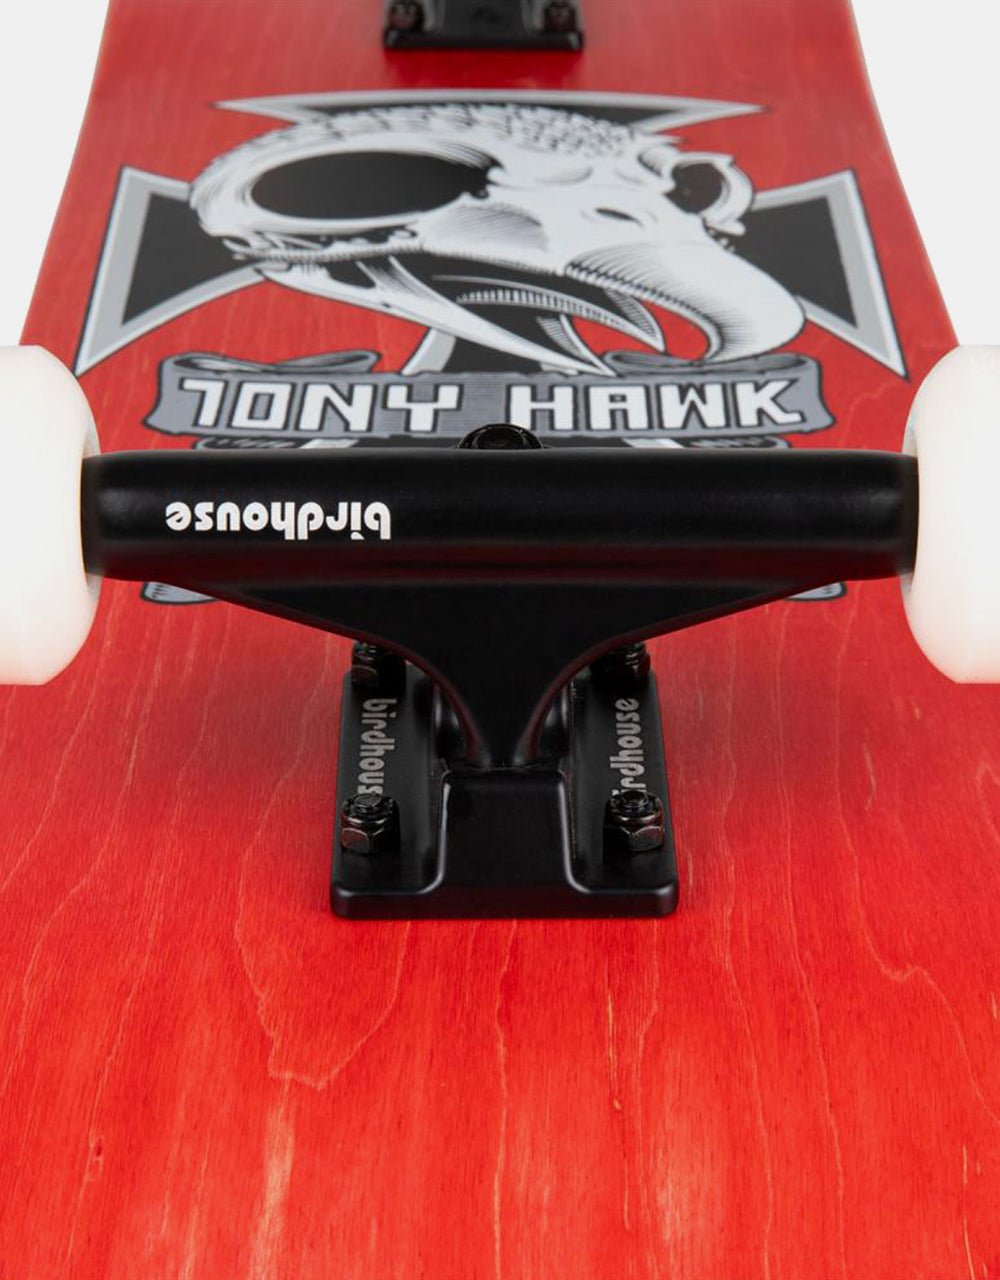 Birdhouse Hawk Skull II Stage 3 Complete Skateboard - 8.25"